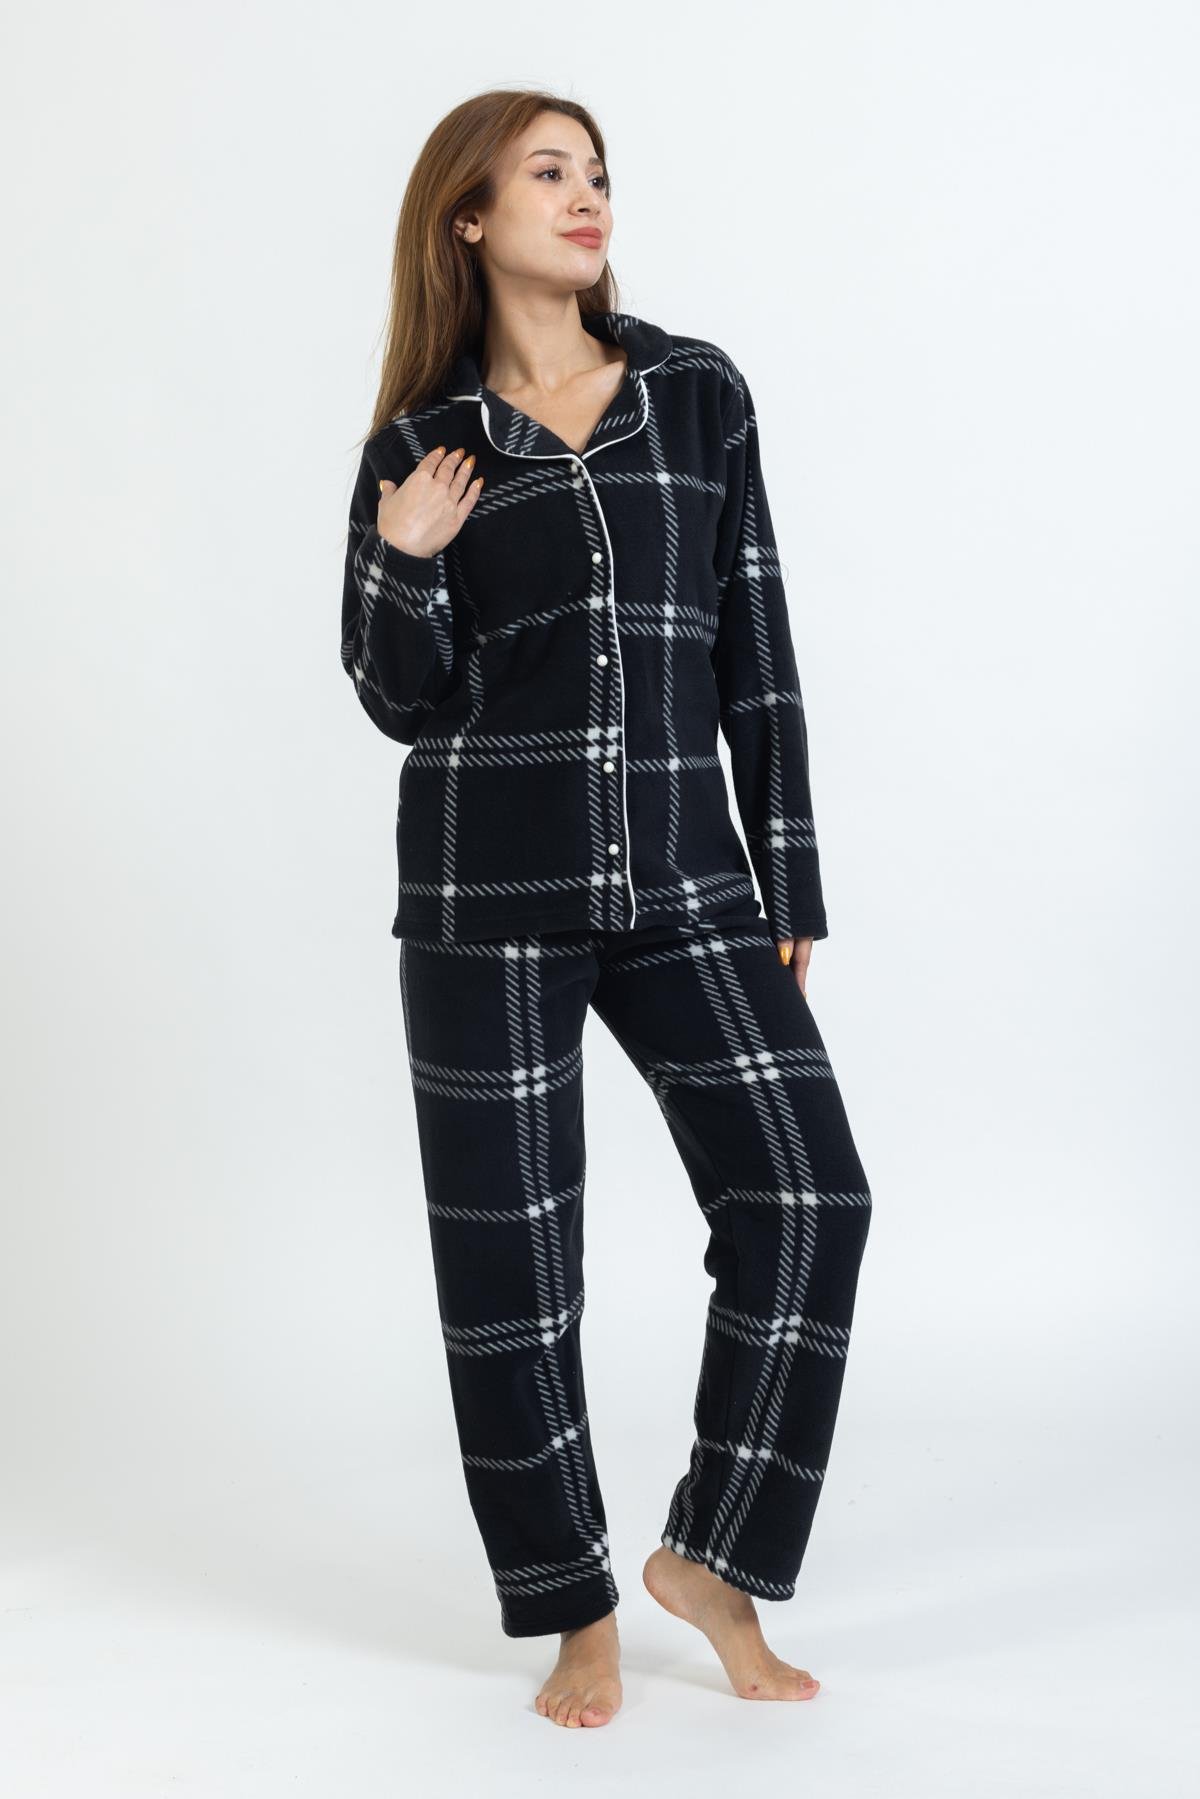 Kadın Önü Düğmeli Gömlek Yaka Polar Pijama Takımı GRİ-SİYAH